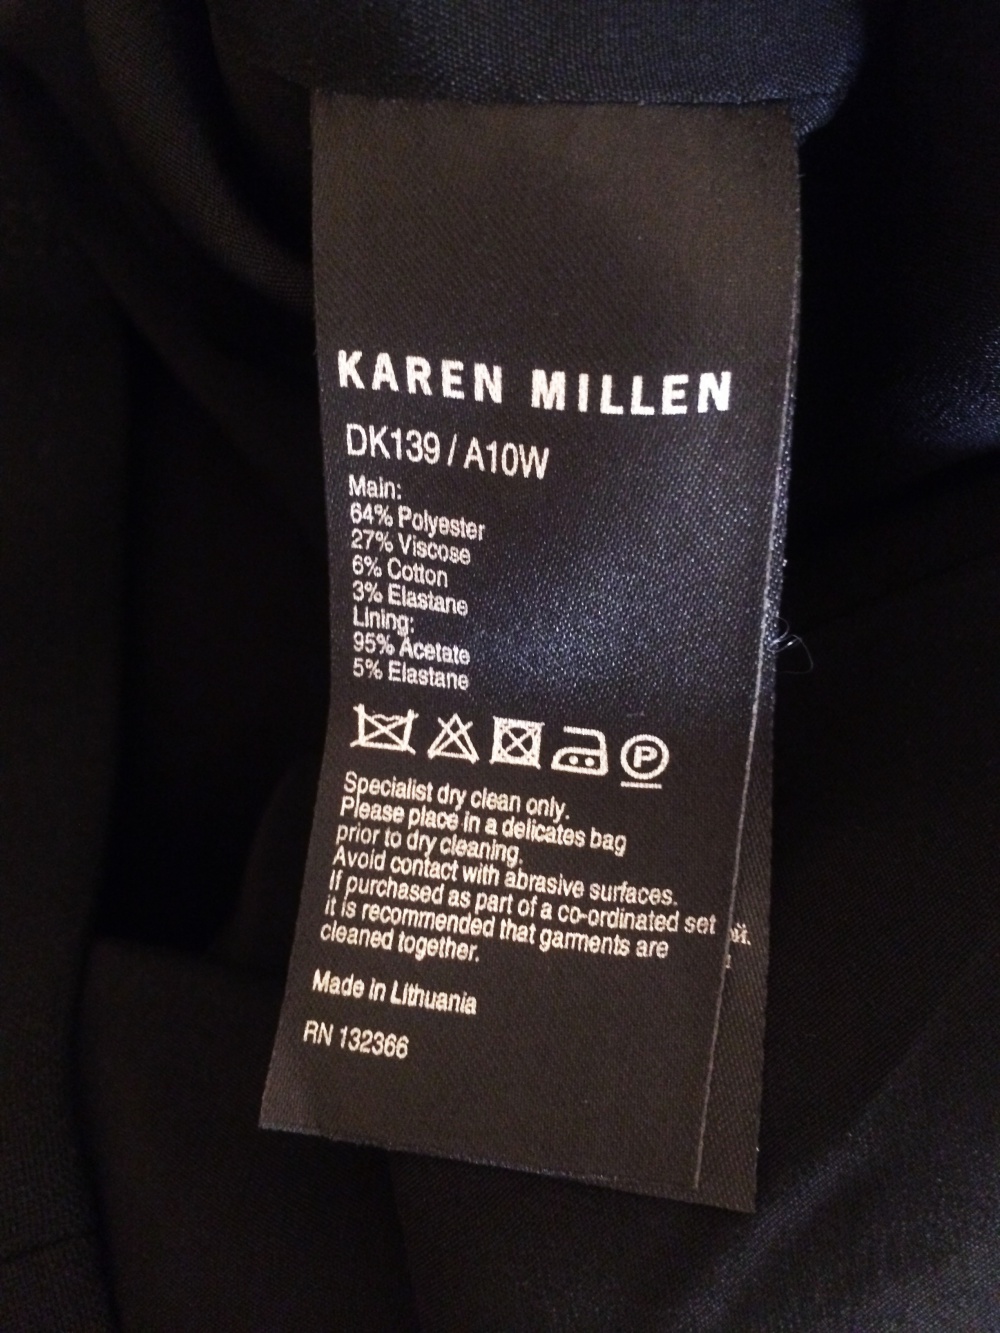 Новое чёрное платье Karen Millen (16 UK)